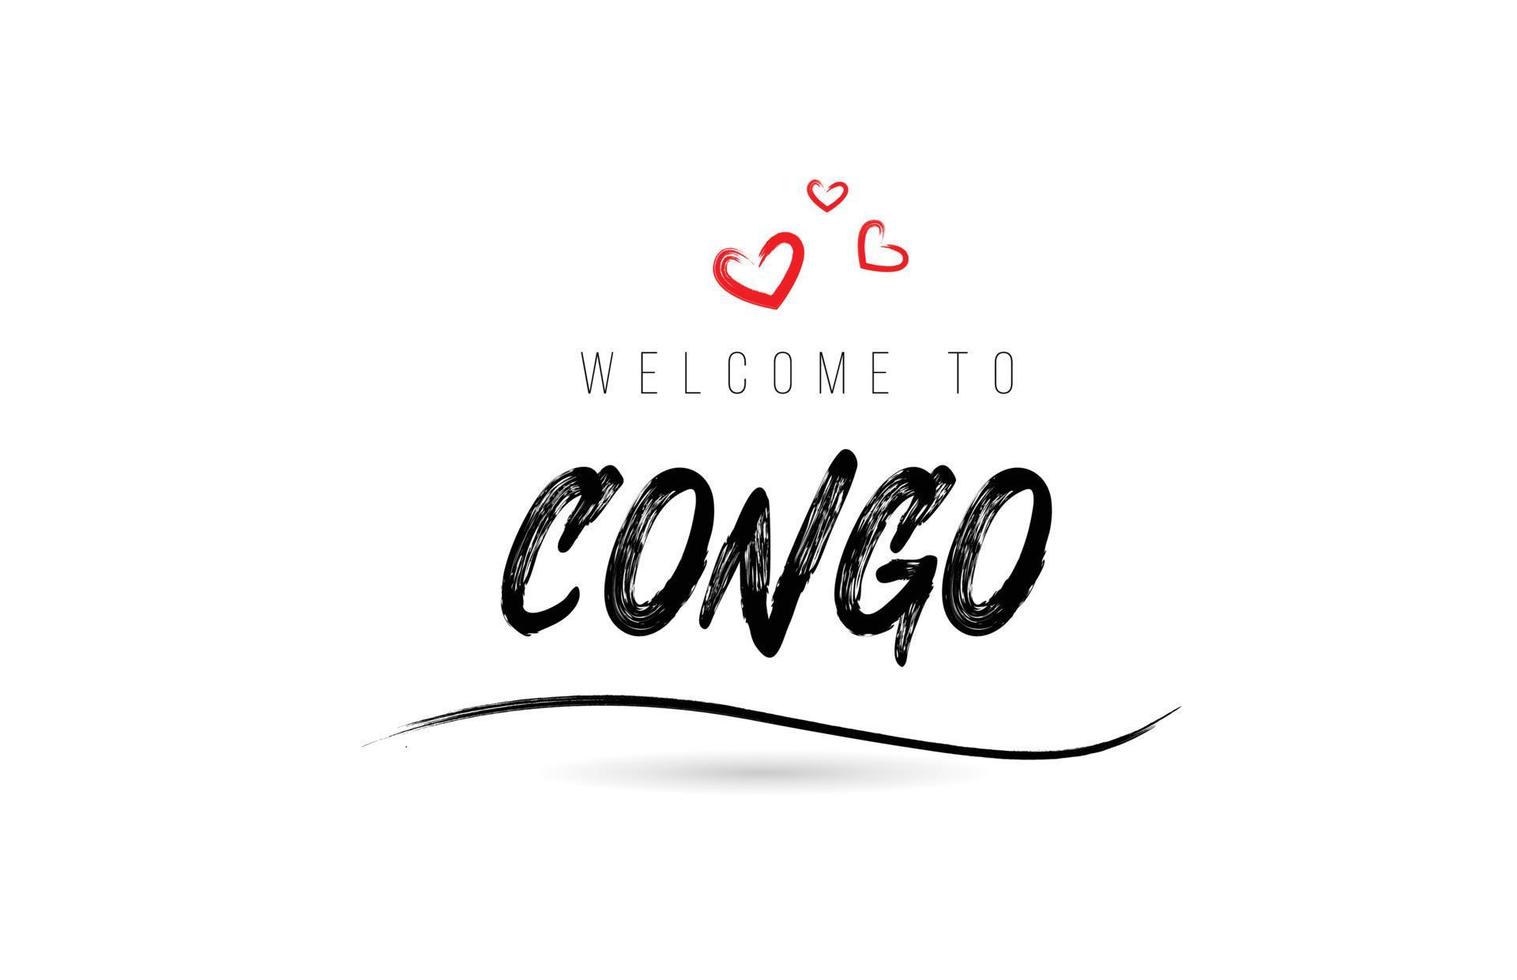 Welkom naar Congo land tekst typografie met rood liefde hart en zwart naam vector